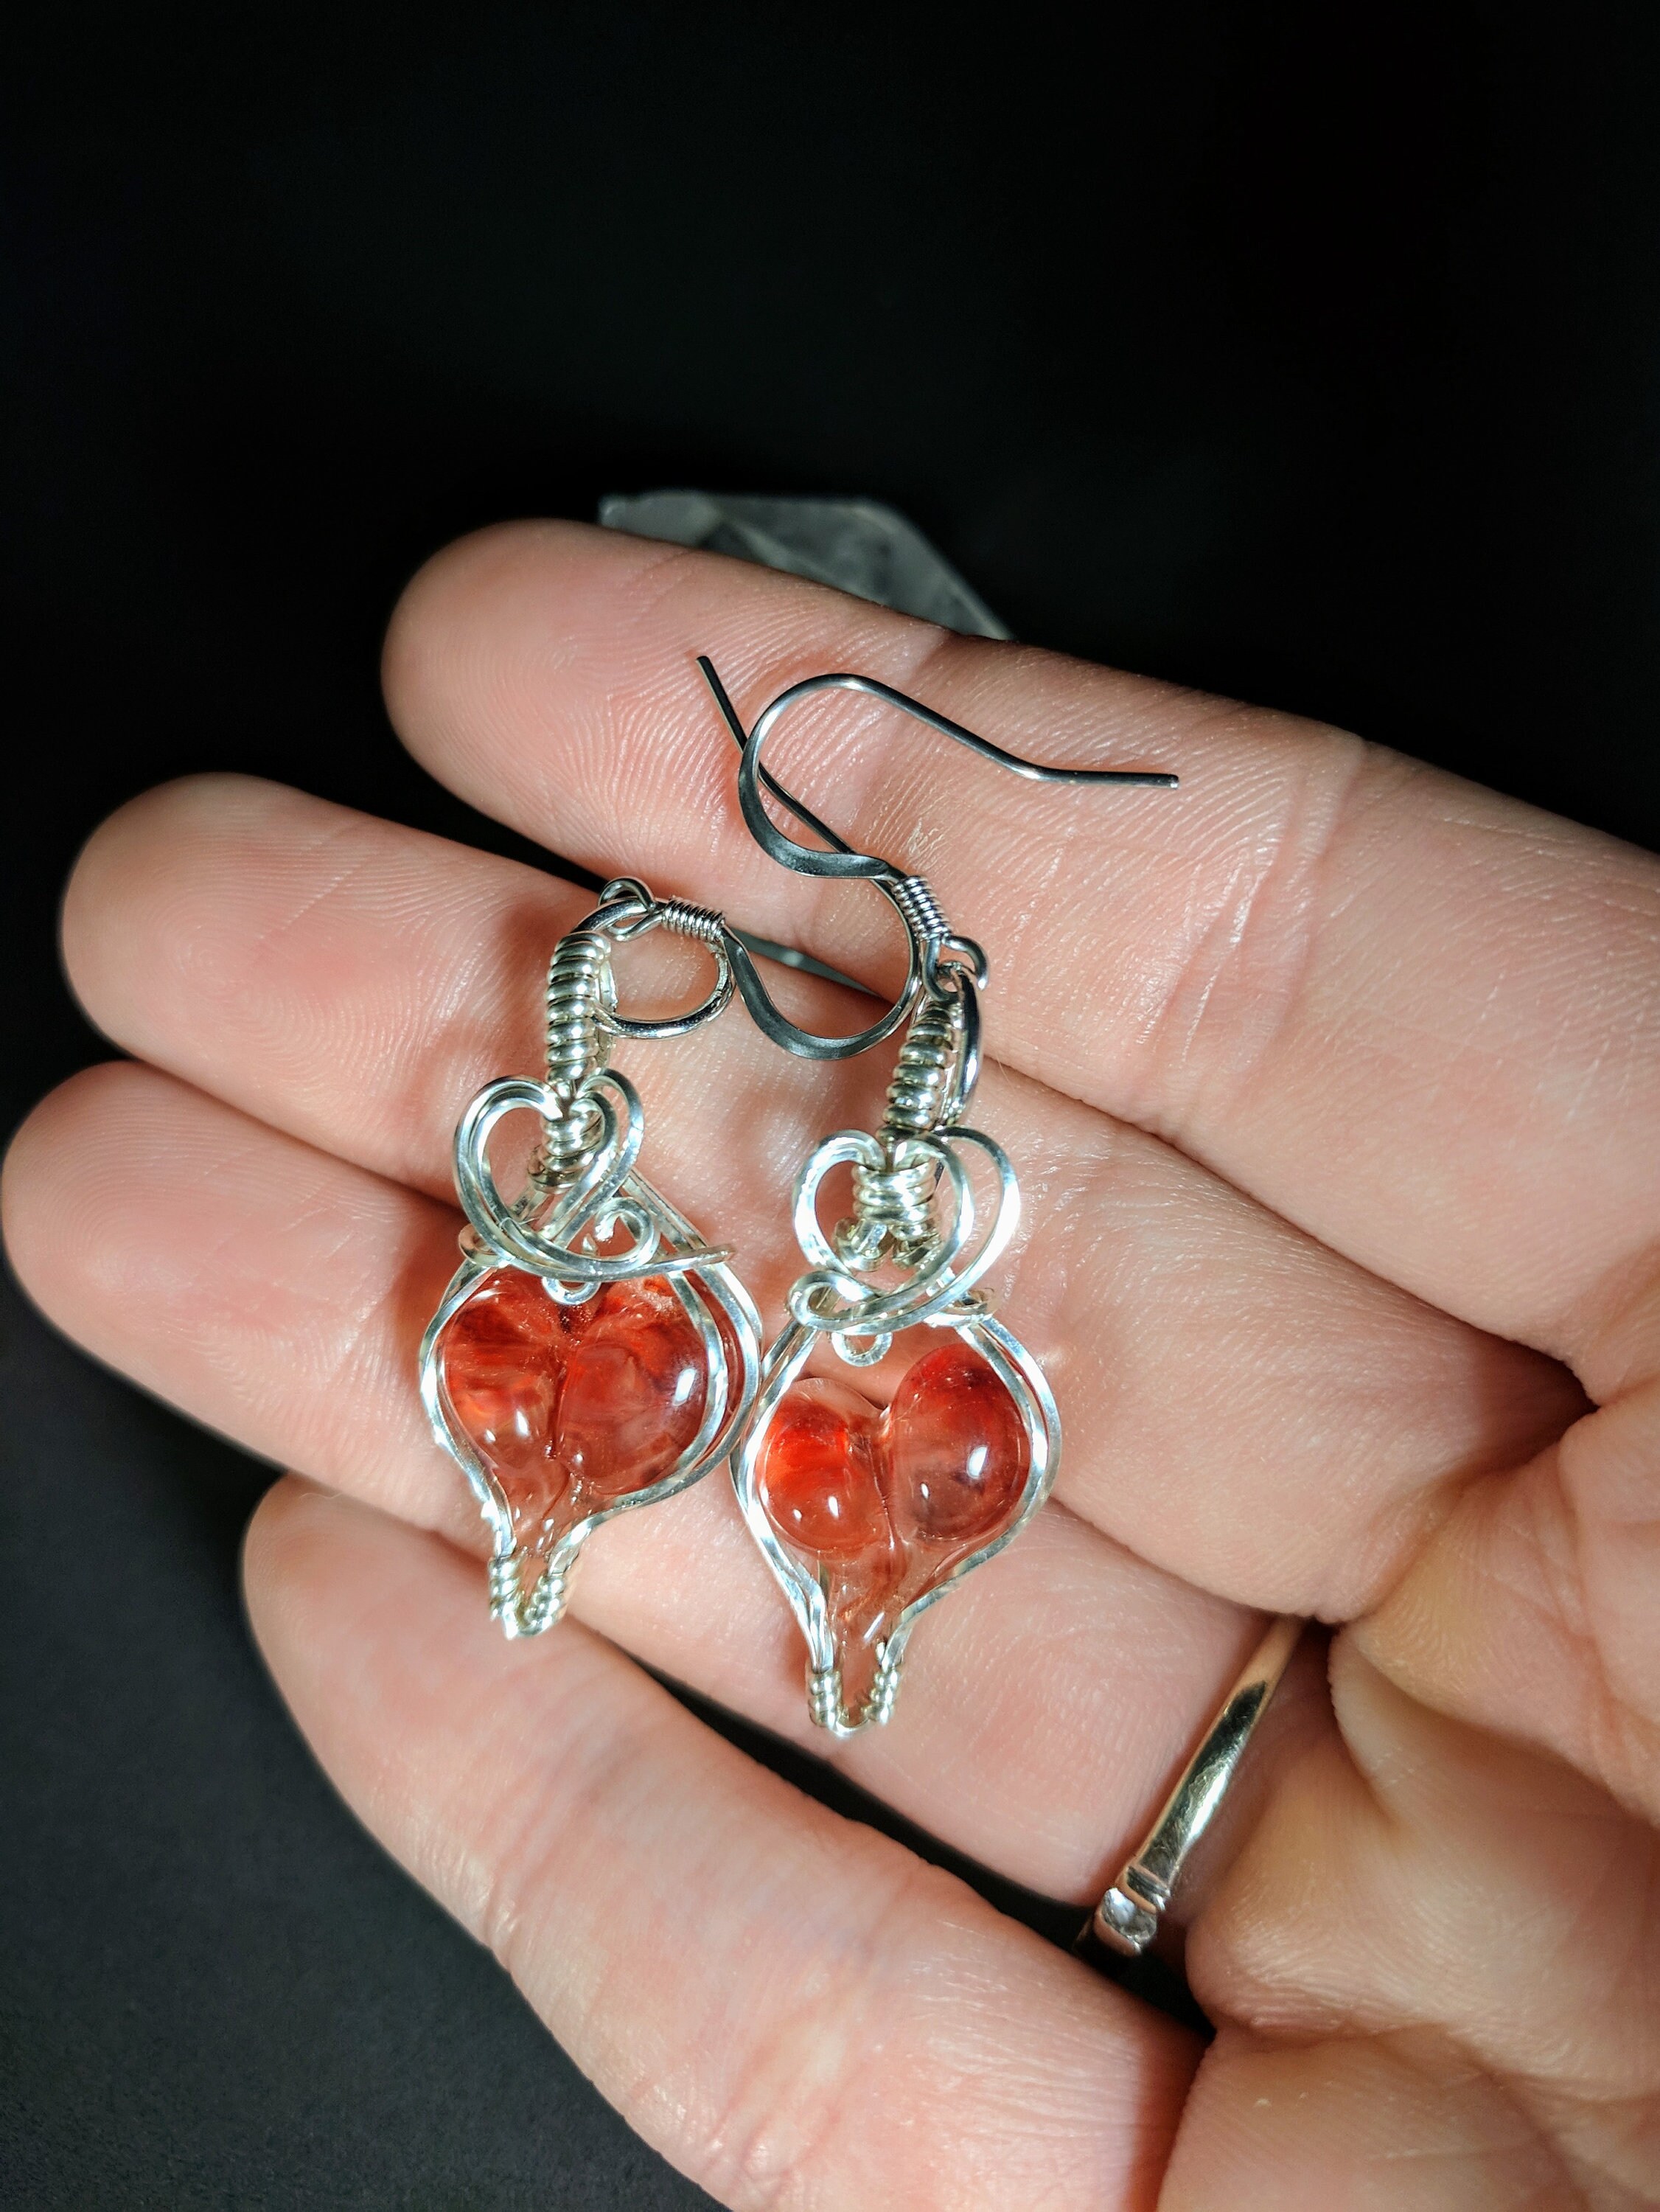 Valentines earrings/ Red heart earrings/ sterling silver glass heart  earrings